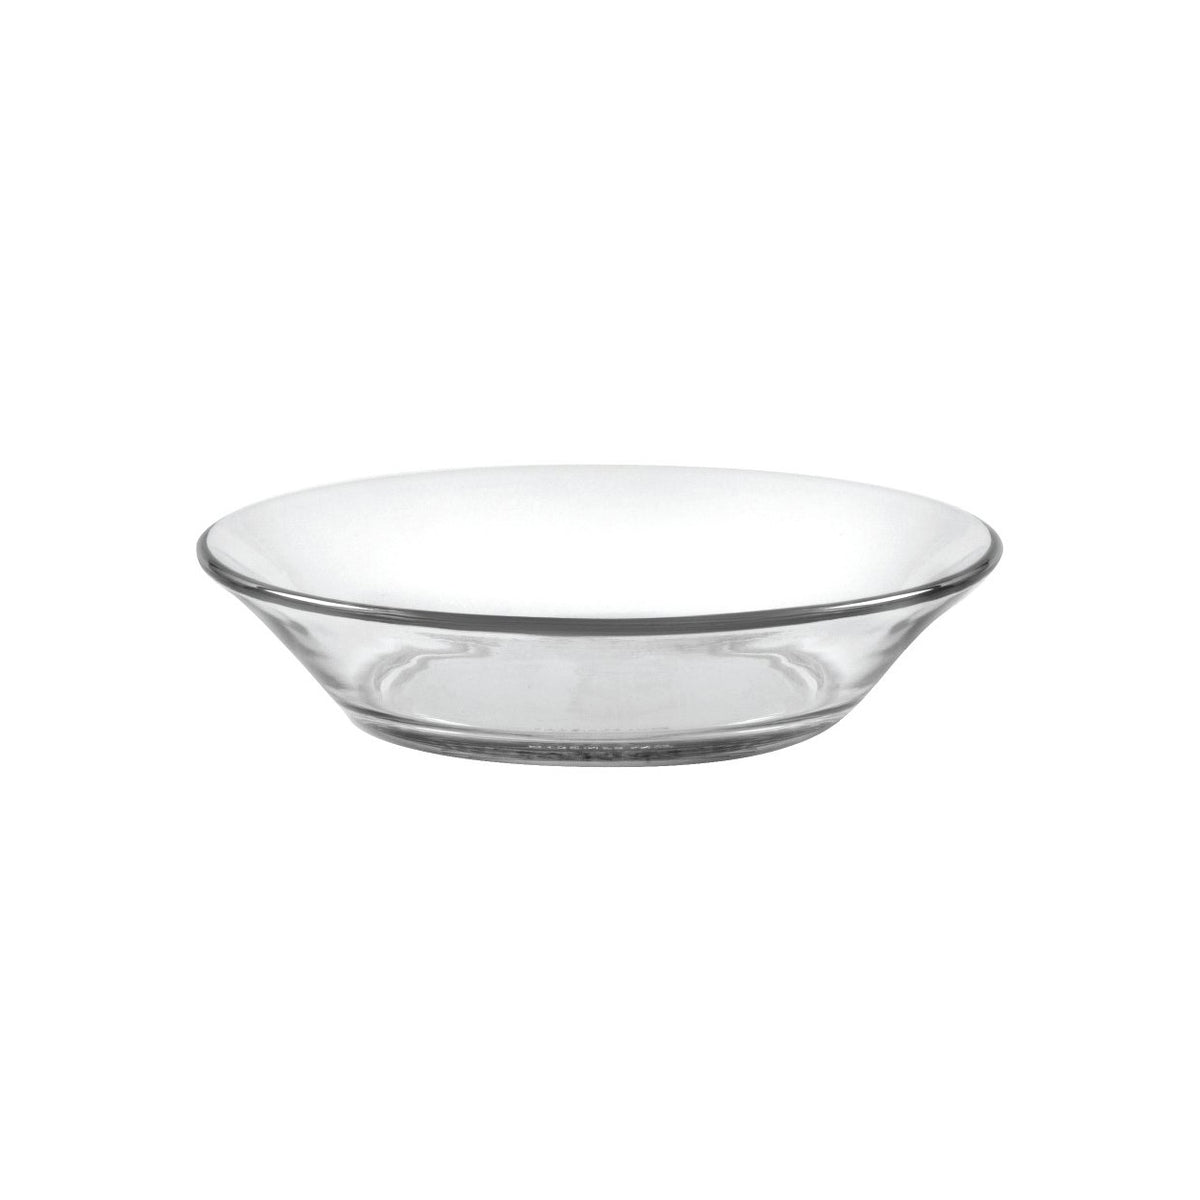 Assiette transparente en verre royale - d30cm - Conforama